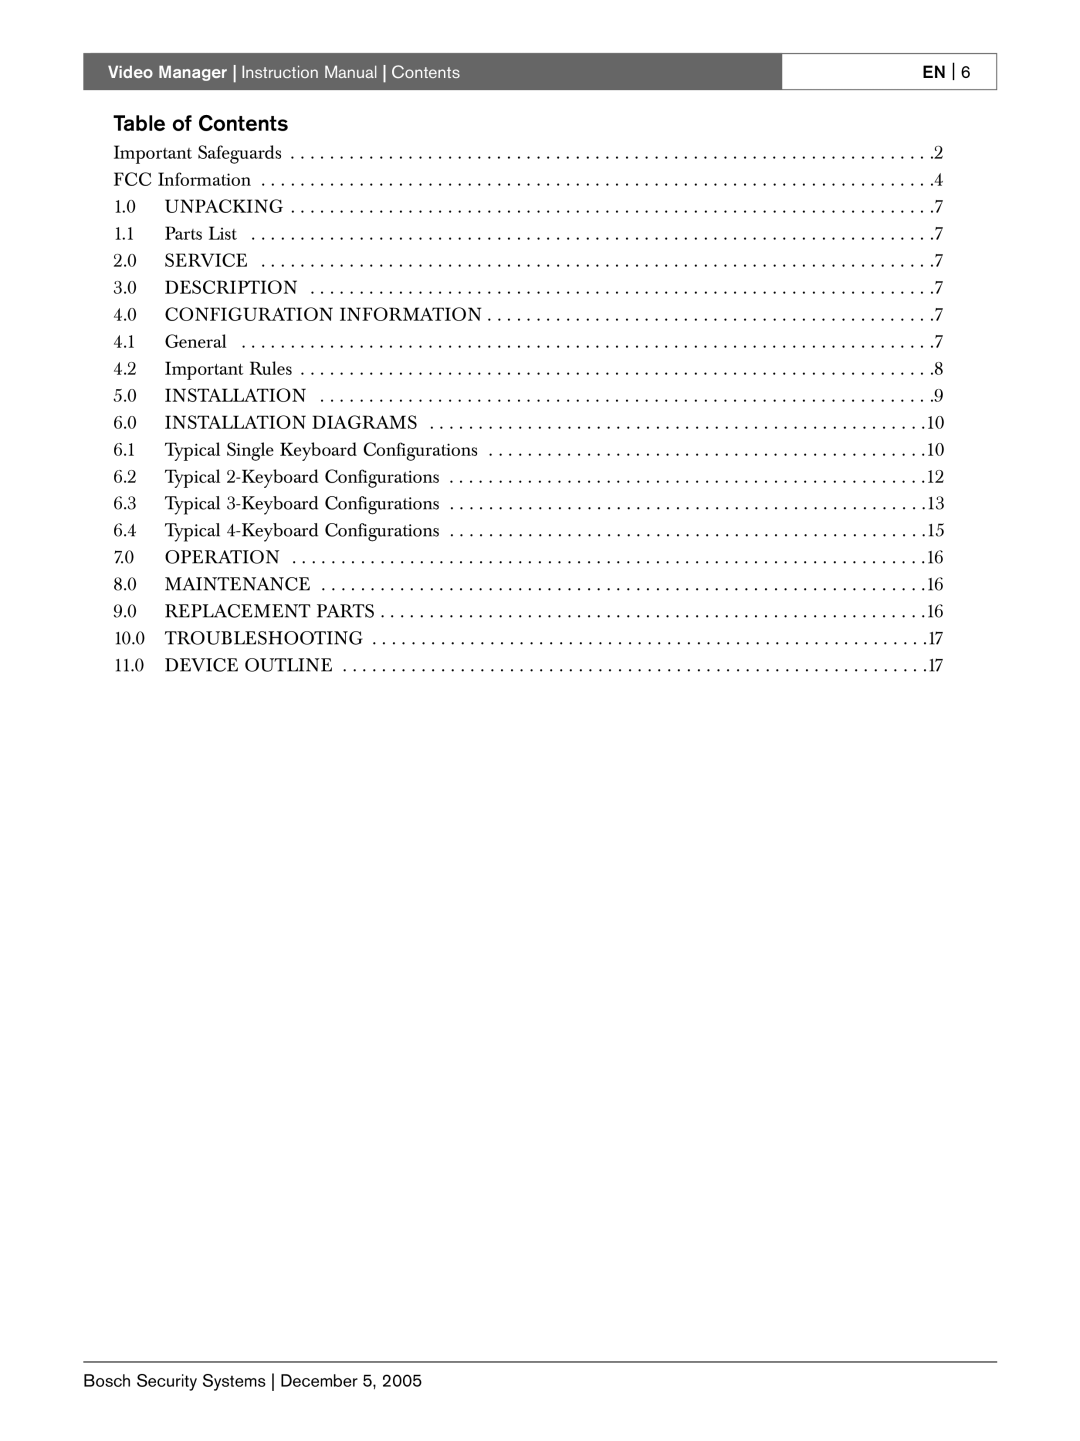 Bosch Appliances LTC 2605/91 instruction manual Table of Contents, En 